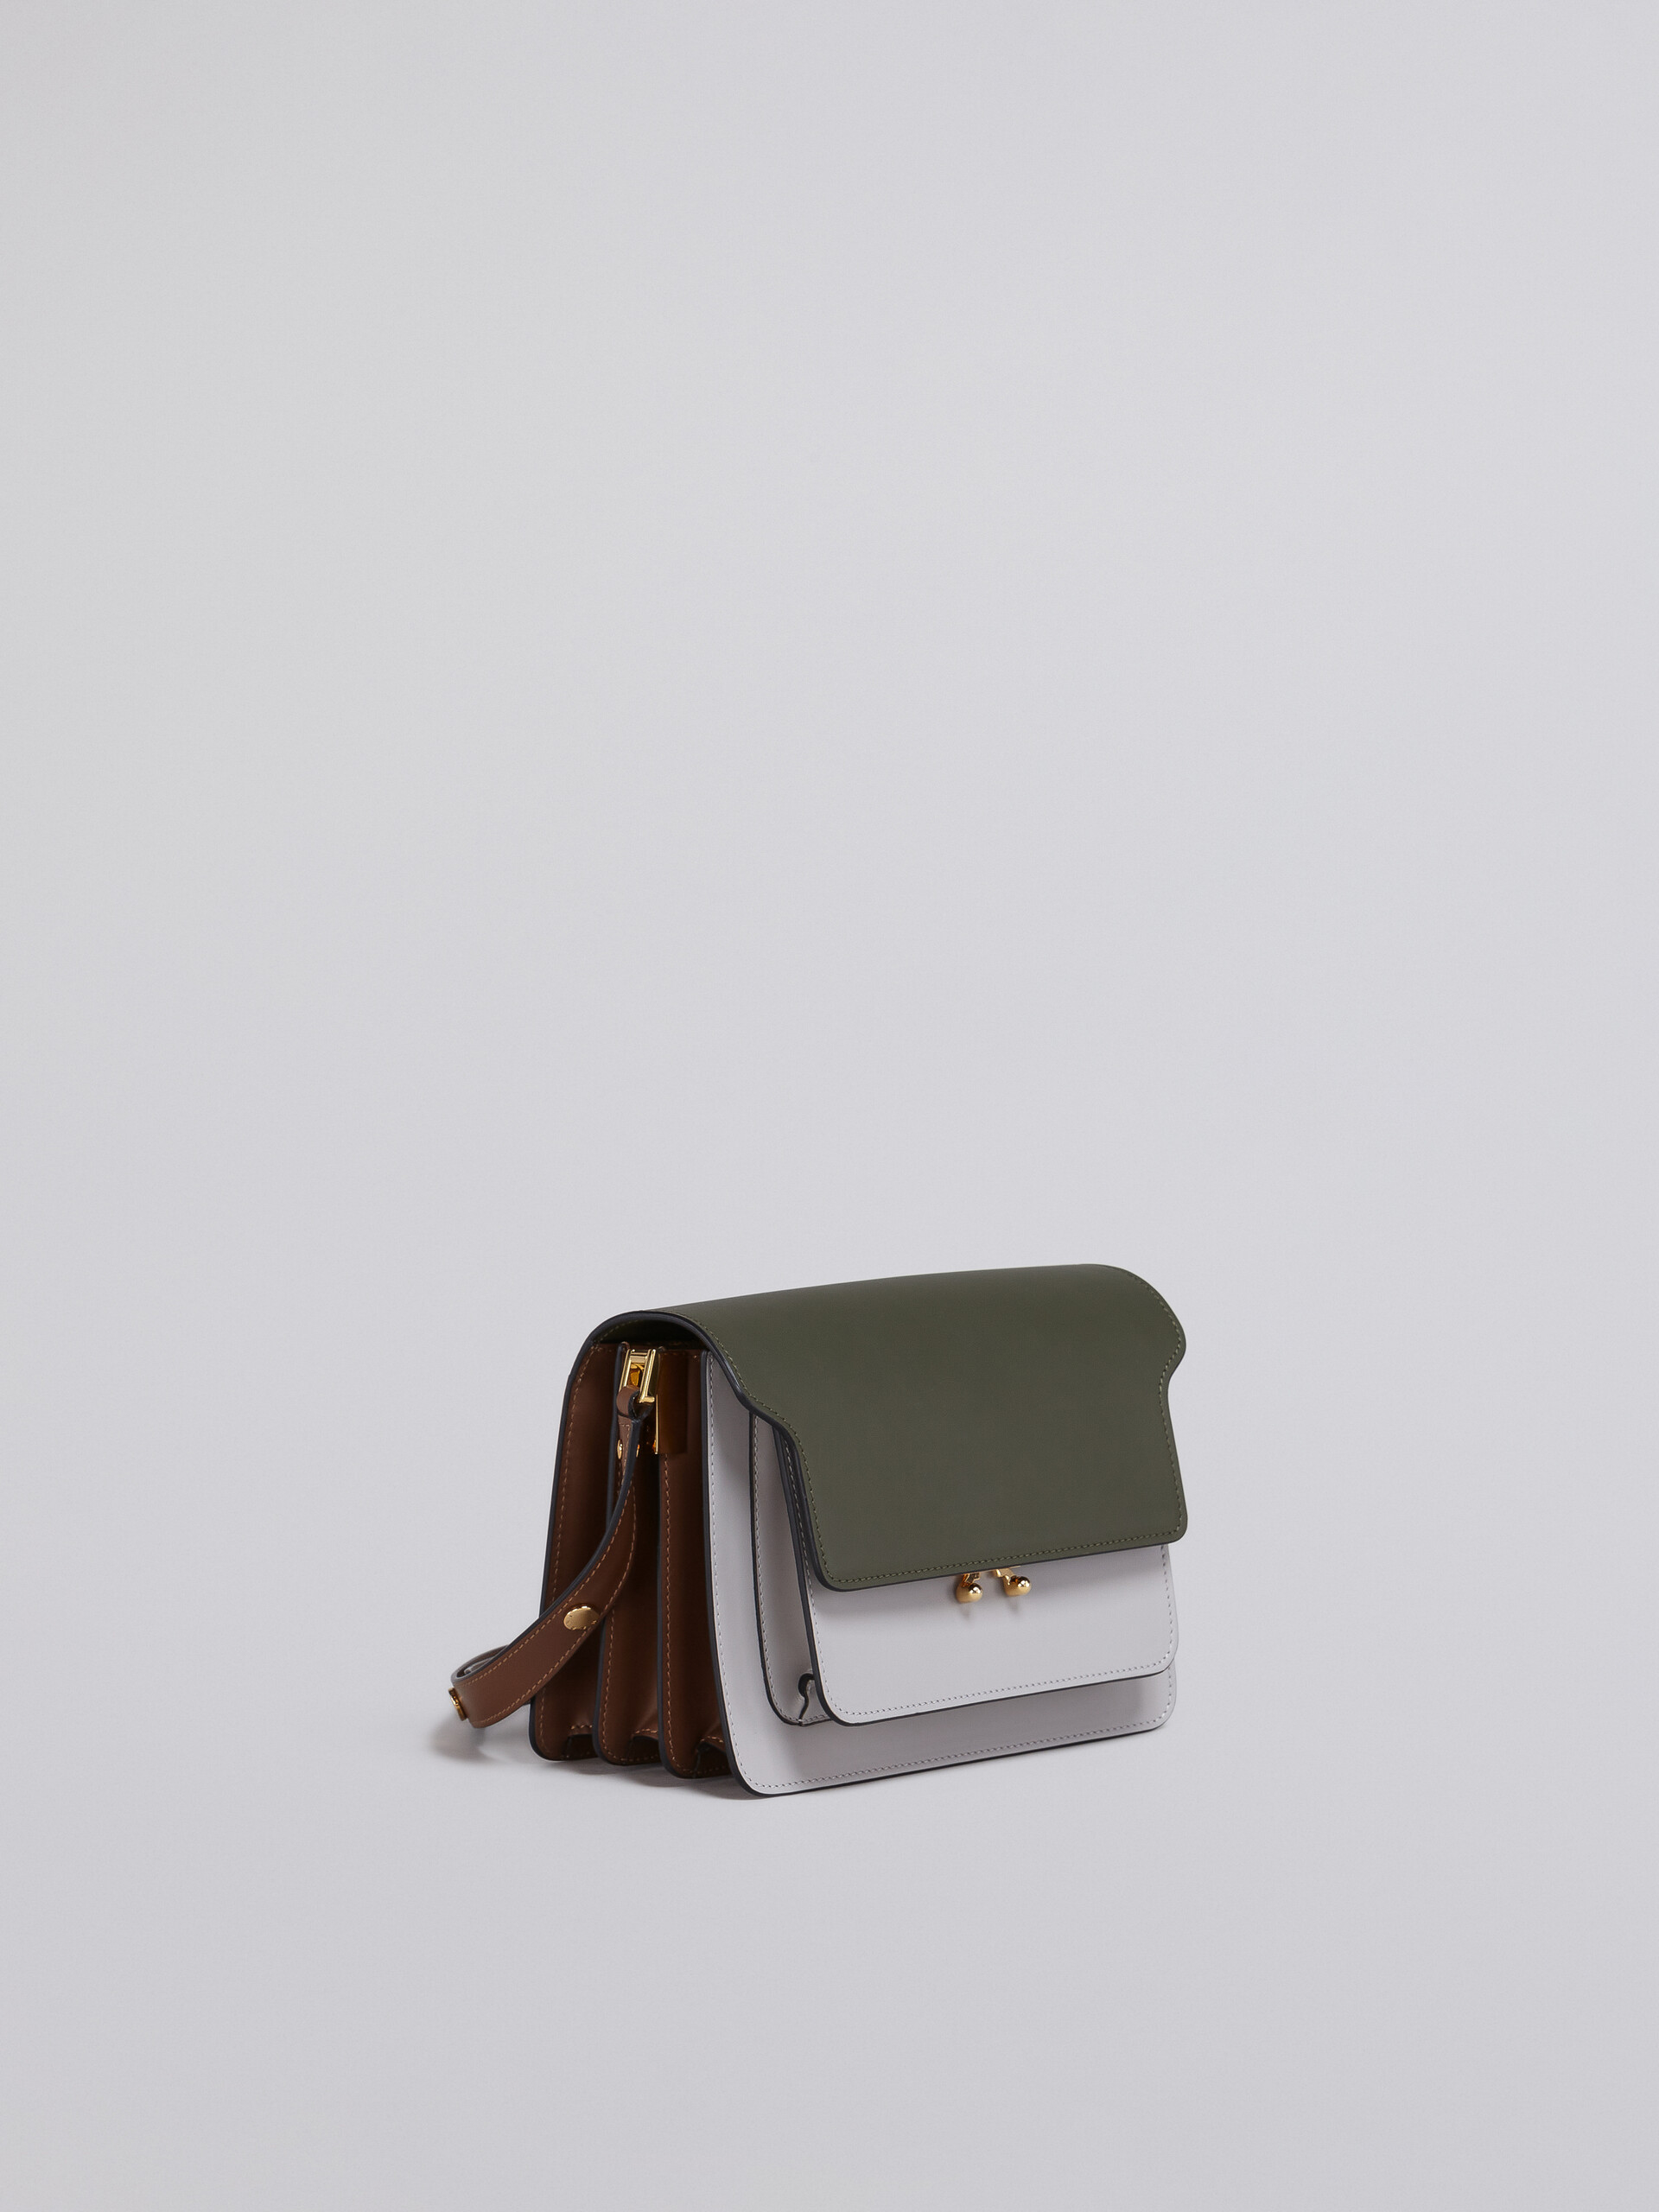 TRUNK bag in vitello liscio verde bianco e beige - Borse a spalla - Image 5